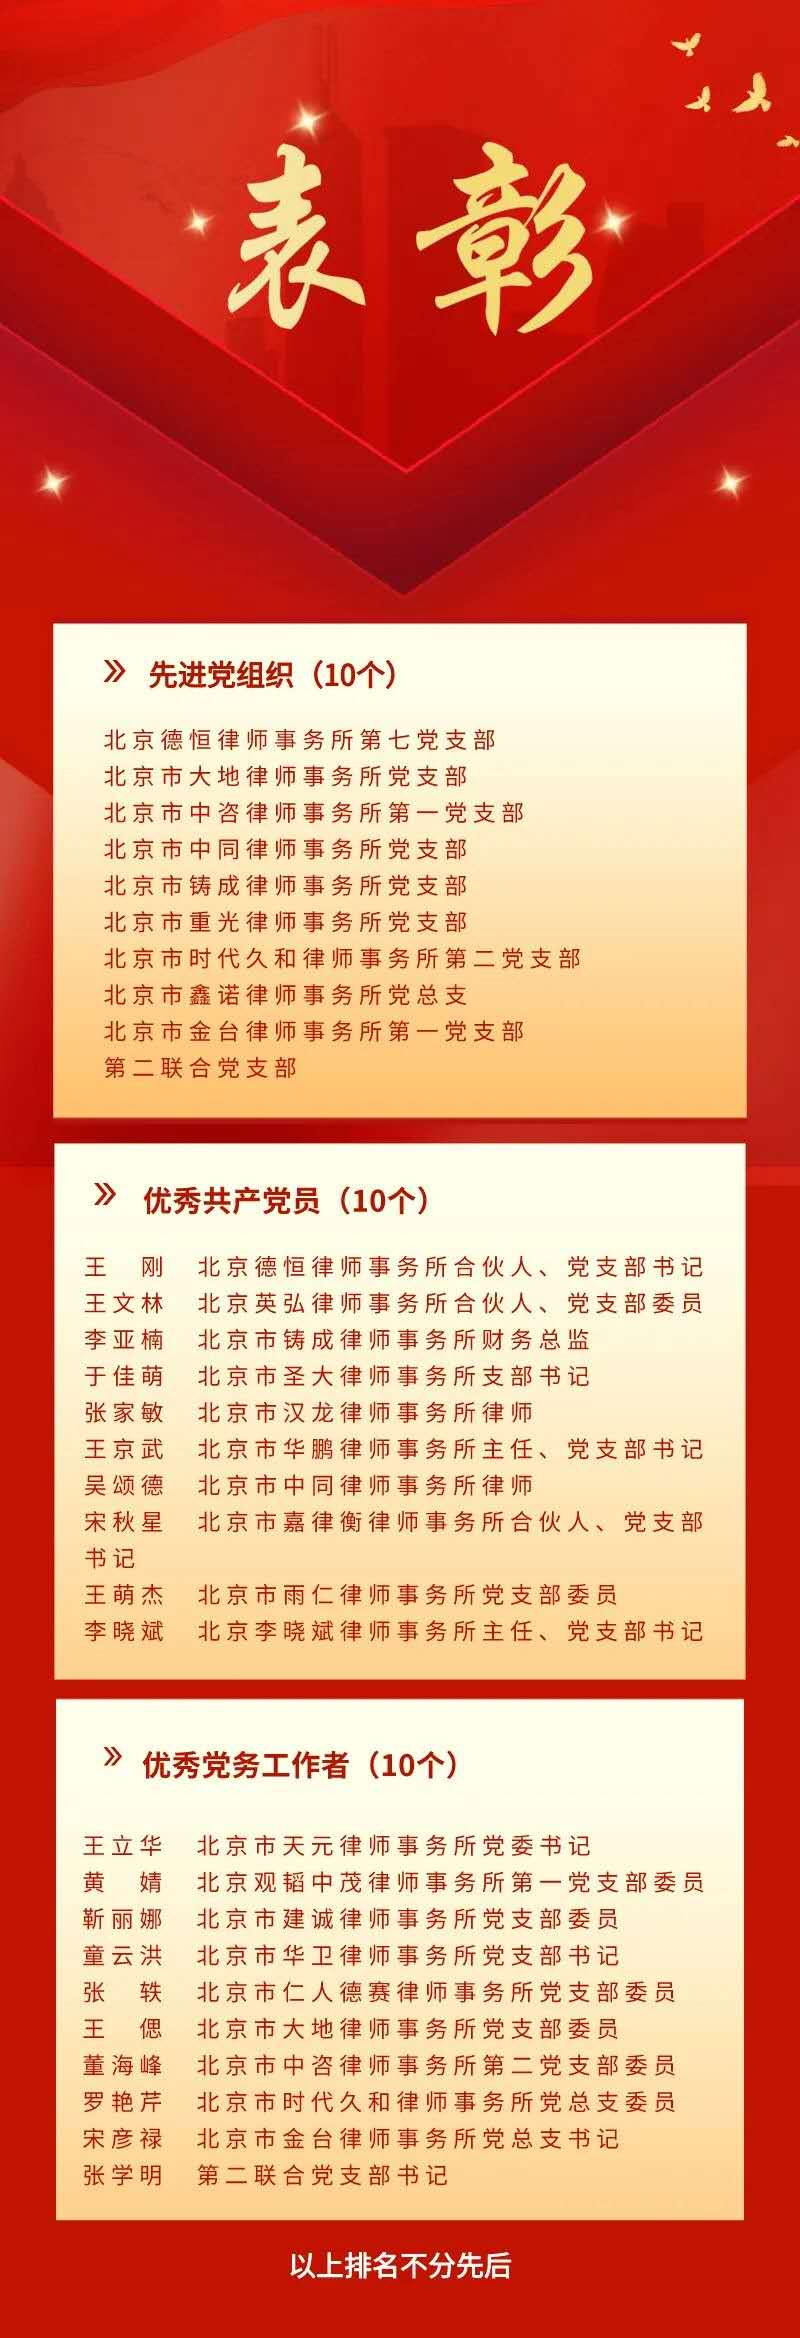 本所王京武2020.7.1被评为西城区律师行业优秀共产党员